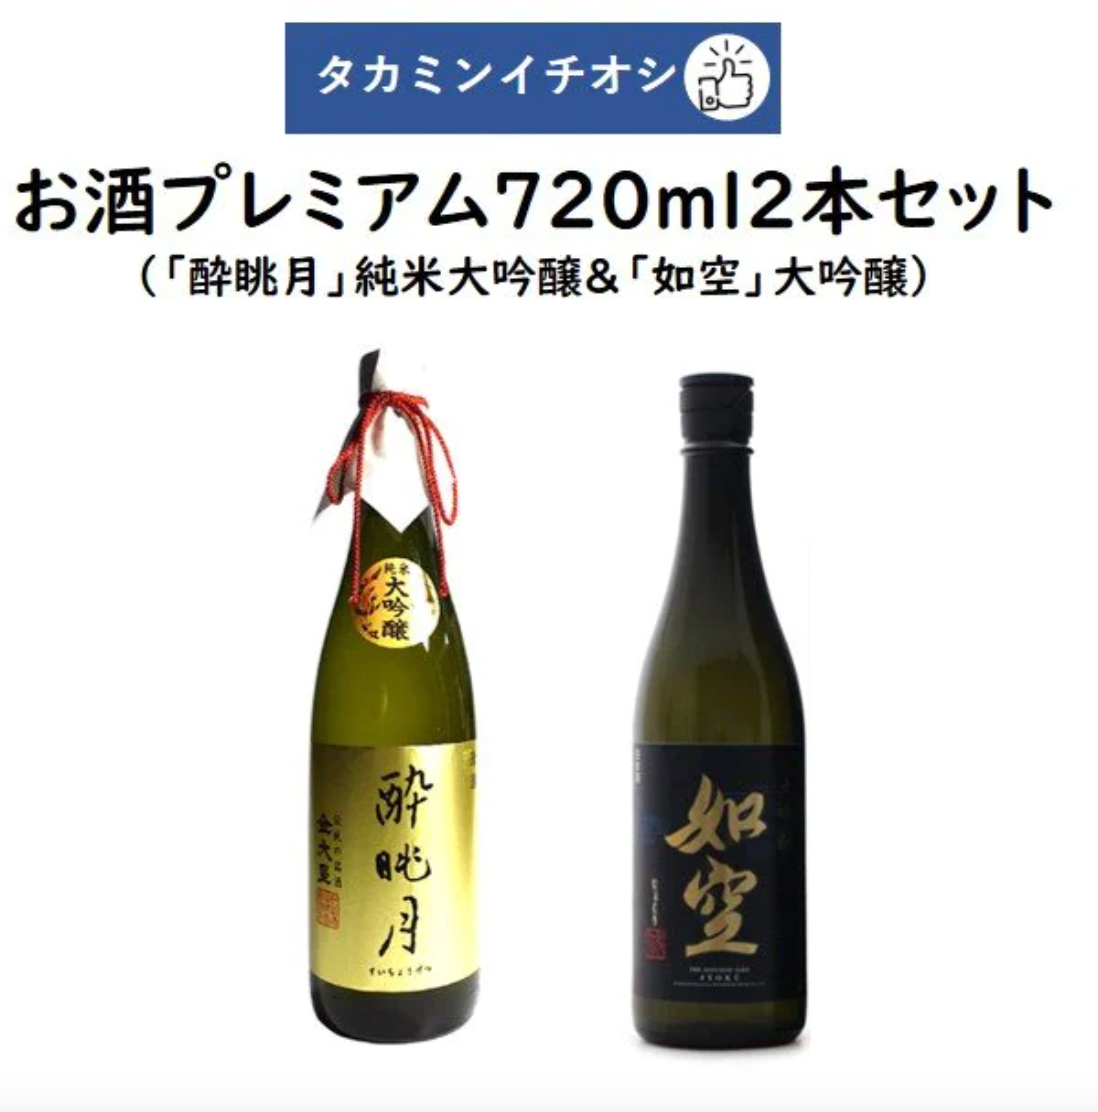 Takamin Recommended Sake Premium 720ml 2 bottles set "Suikeitsuki" Junmai Daiginjo Maruyama Sake Brewery & "Nyosora" Daiginjo Hachinohe Sake